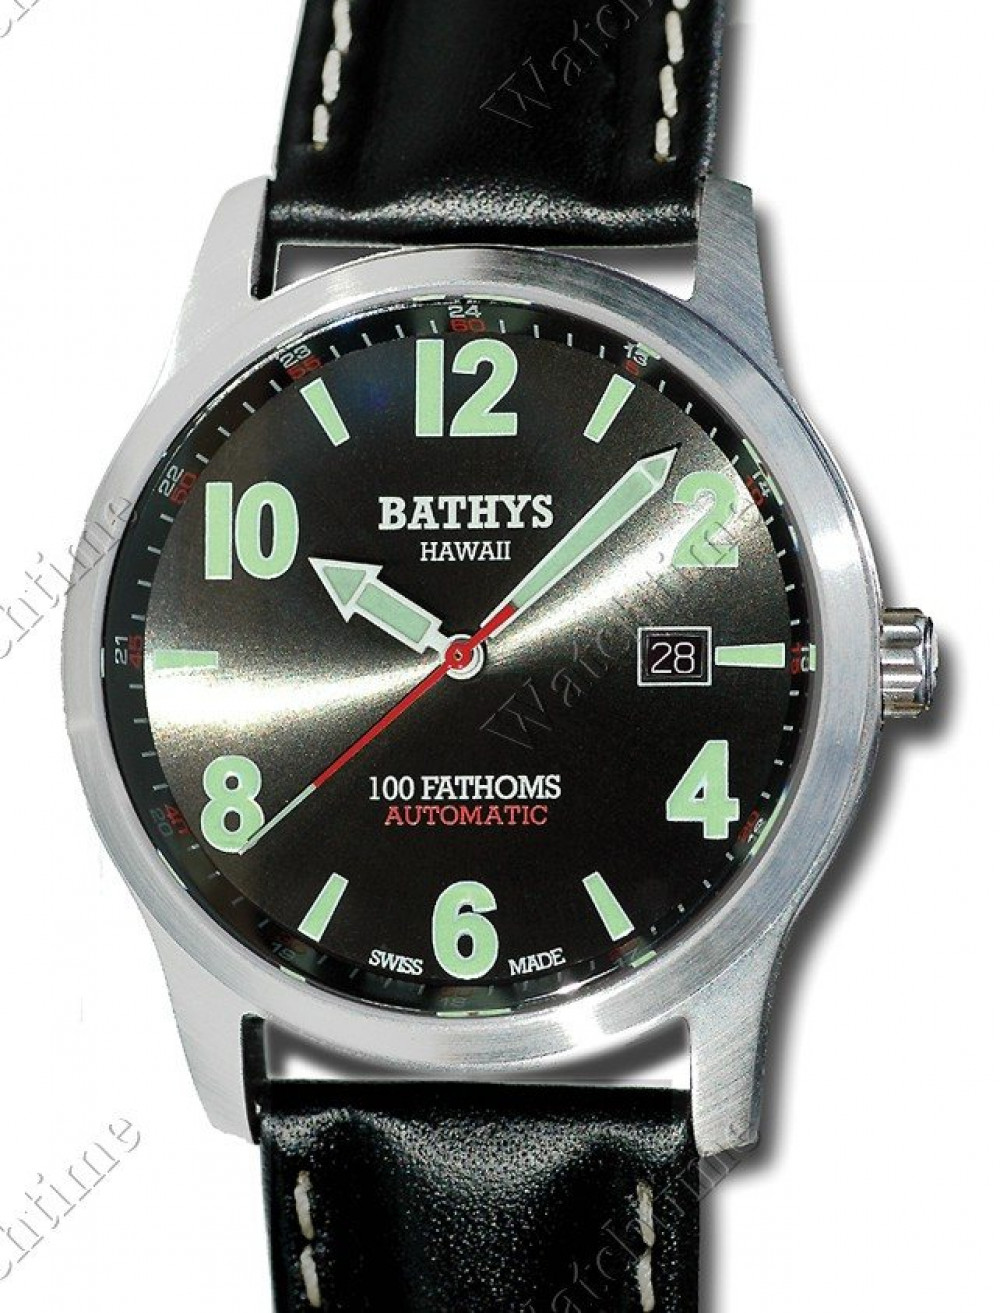 Zegarek firmy Bathys Hawaii, model 100 Fathoms Automatic